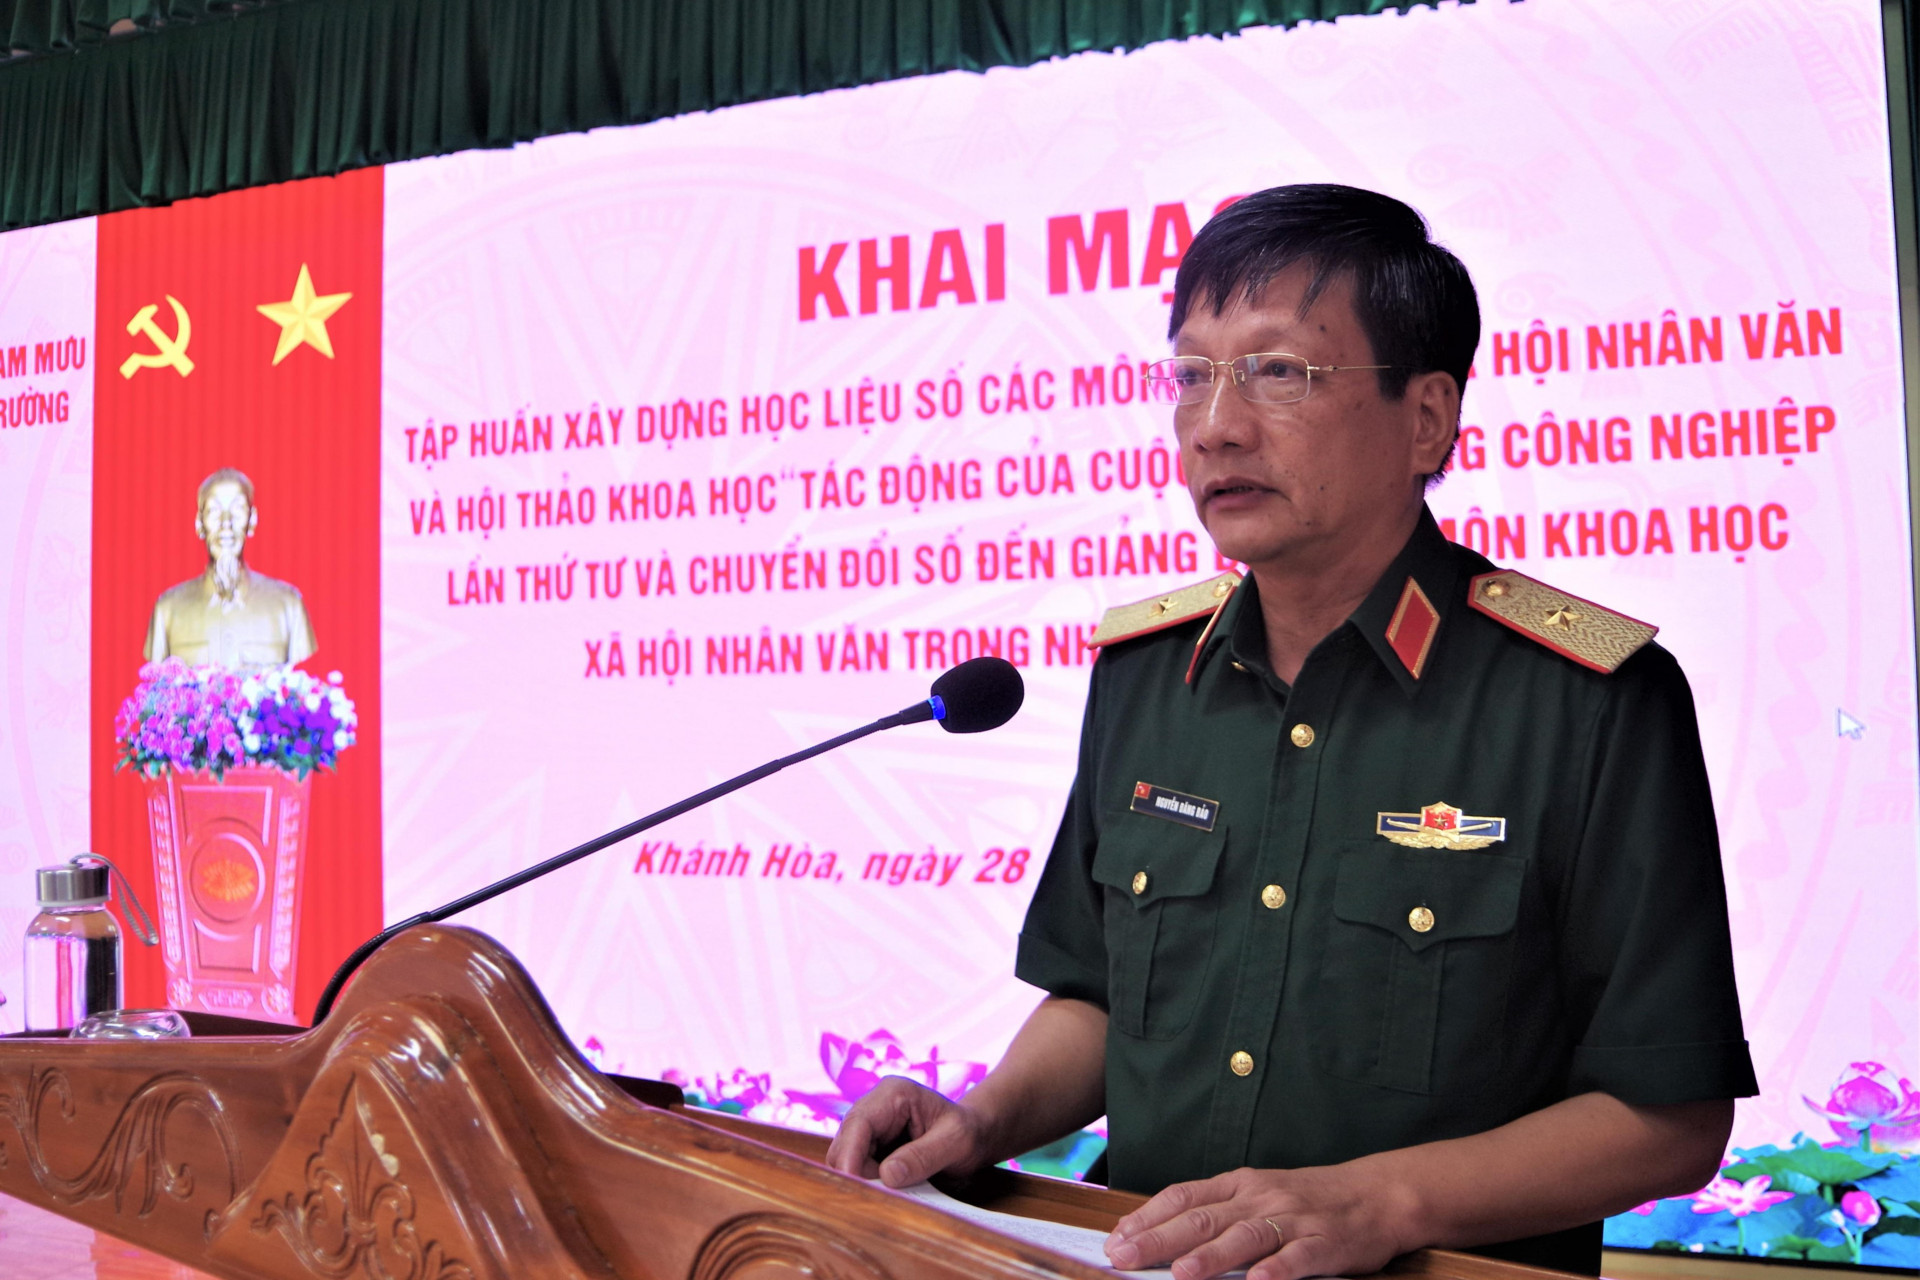 Thiếu tướng Nguyễn Đăng Bảo, Phó Cục trưởng, Cục Nhà trường phát biểu khai mạc tập huấn và hội thảo khoa học